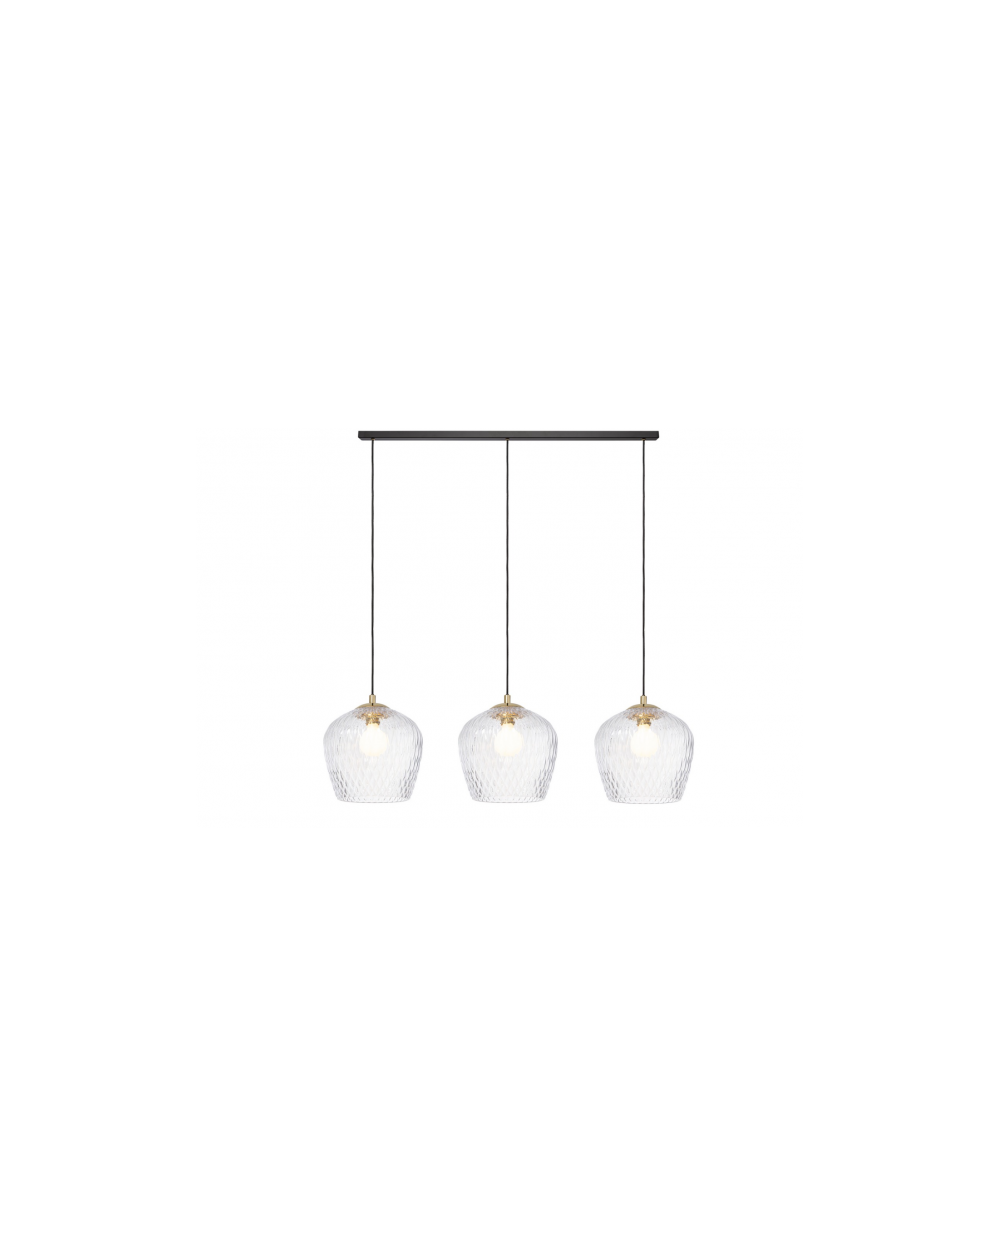 VENUS LISTWA 3 lampa wisząca  nowoczesna szklana - Kaspa transparentne klosze i złoto